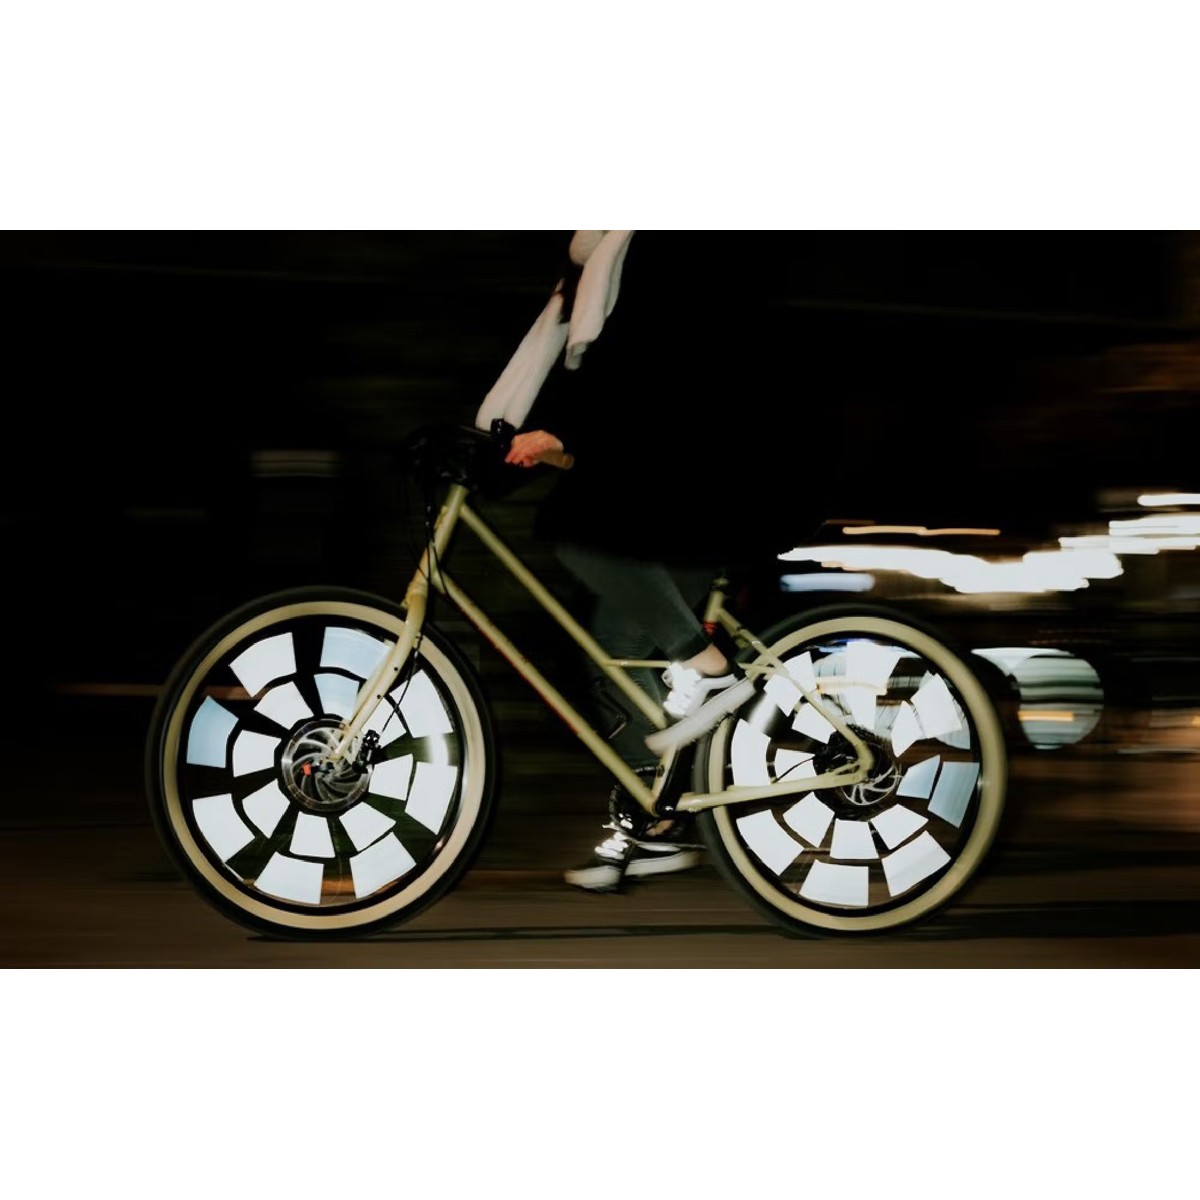 Acheter Réflecteurs pour rayons de vélo - argent, or, gris, anthrac